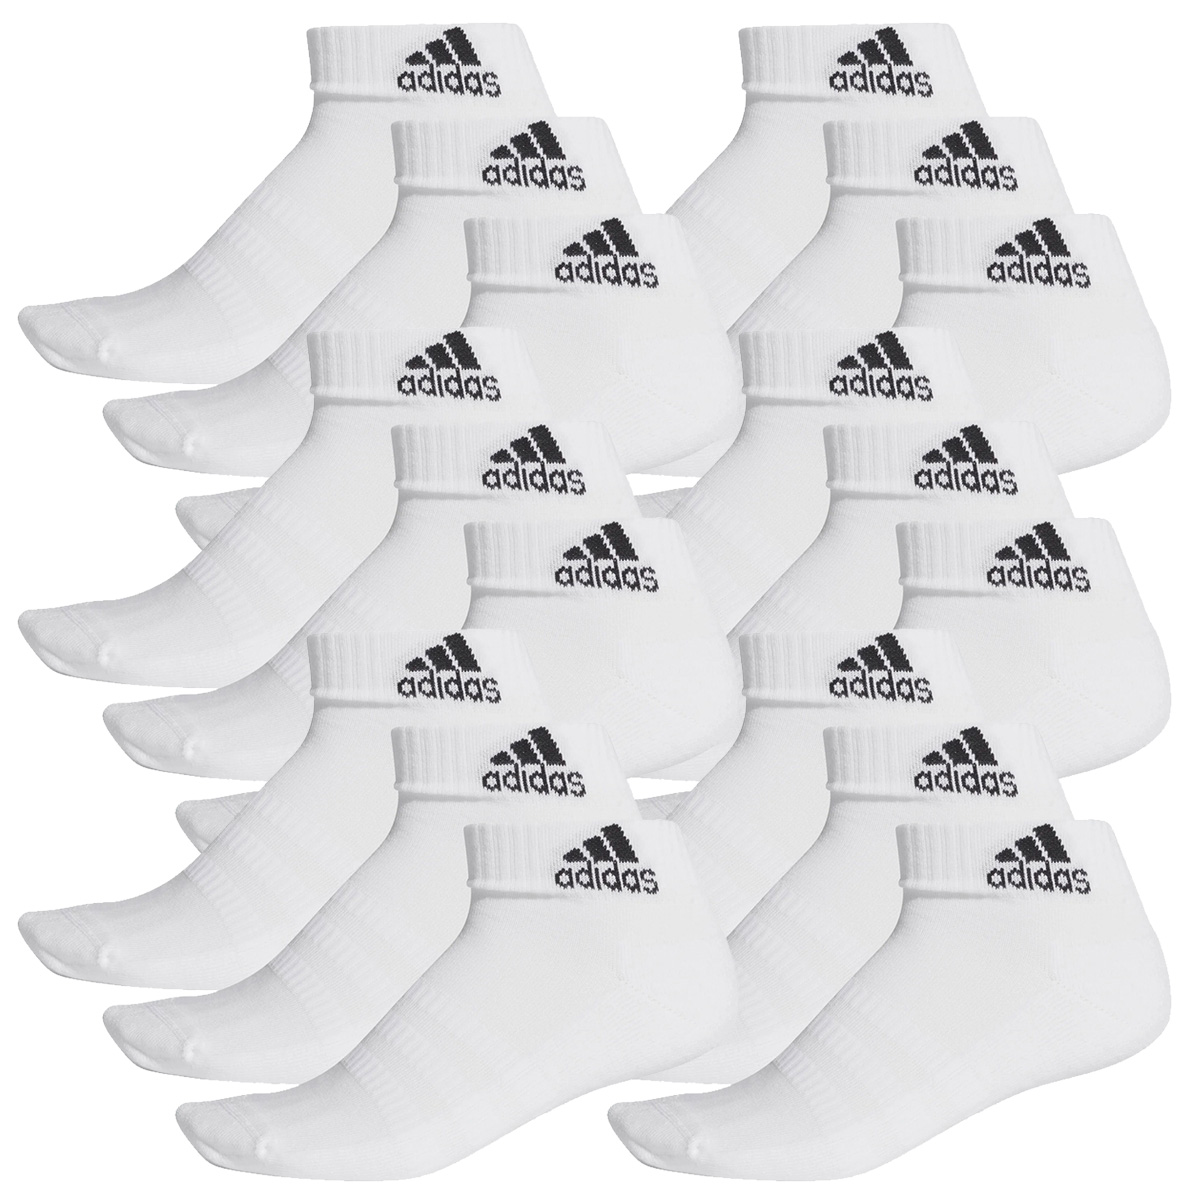 adidas Ankle / Quarter Socken Unisex Kurzsocke Knöchelsocke 18 Paar